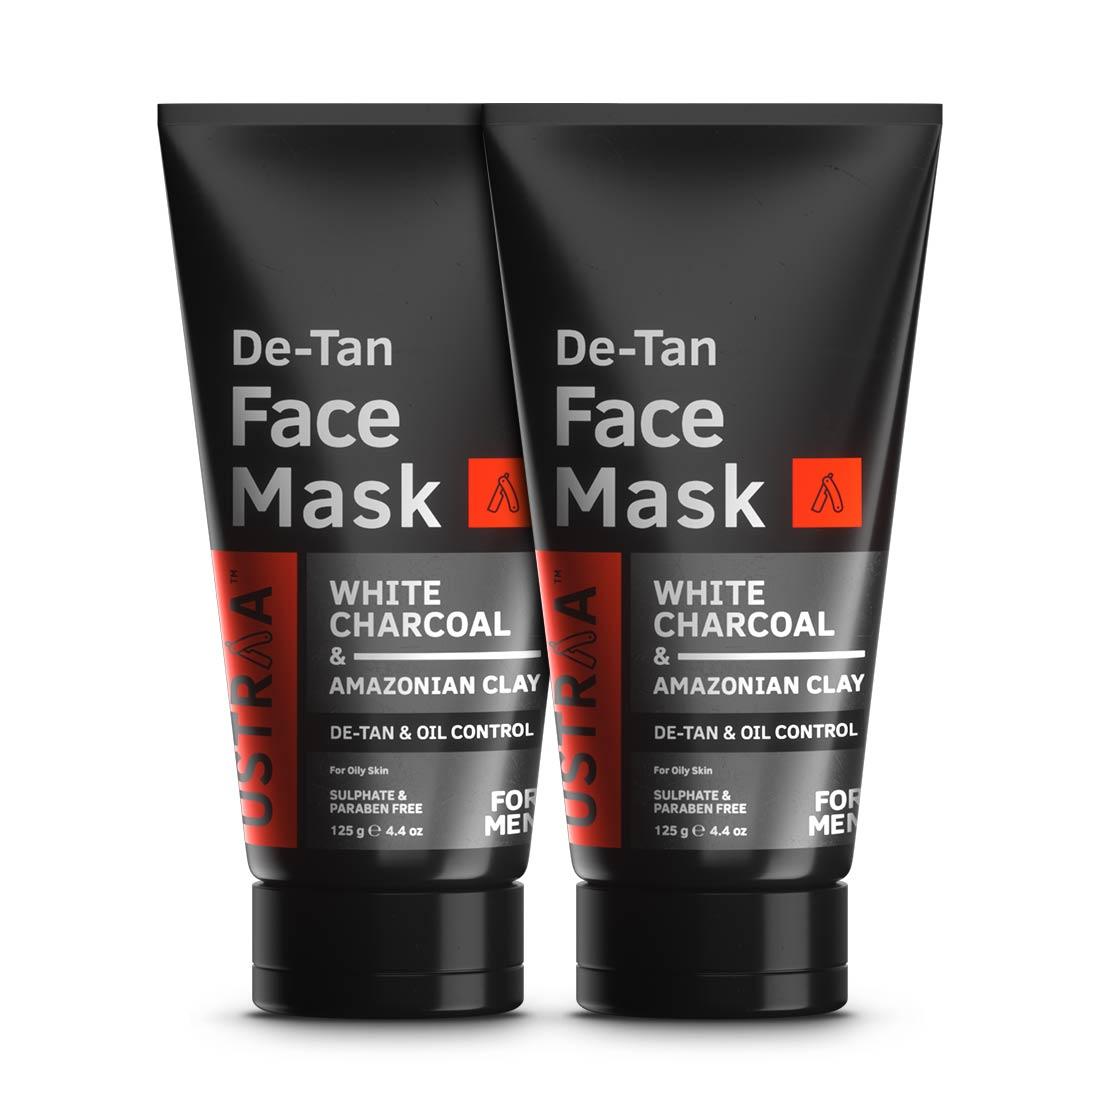 De-Tan Face Mask - Oily Skin - Set of 2